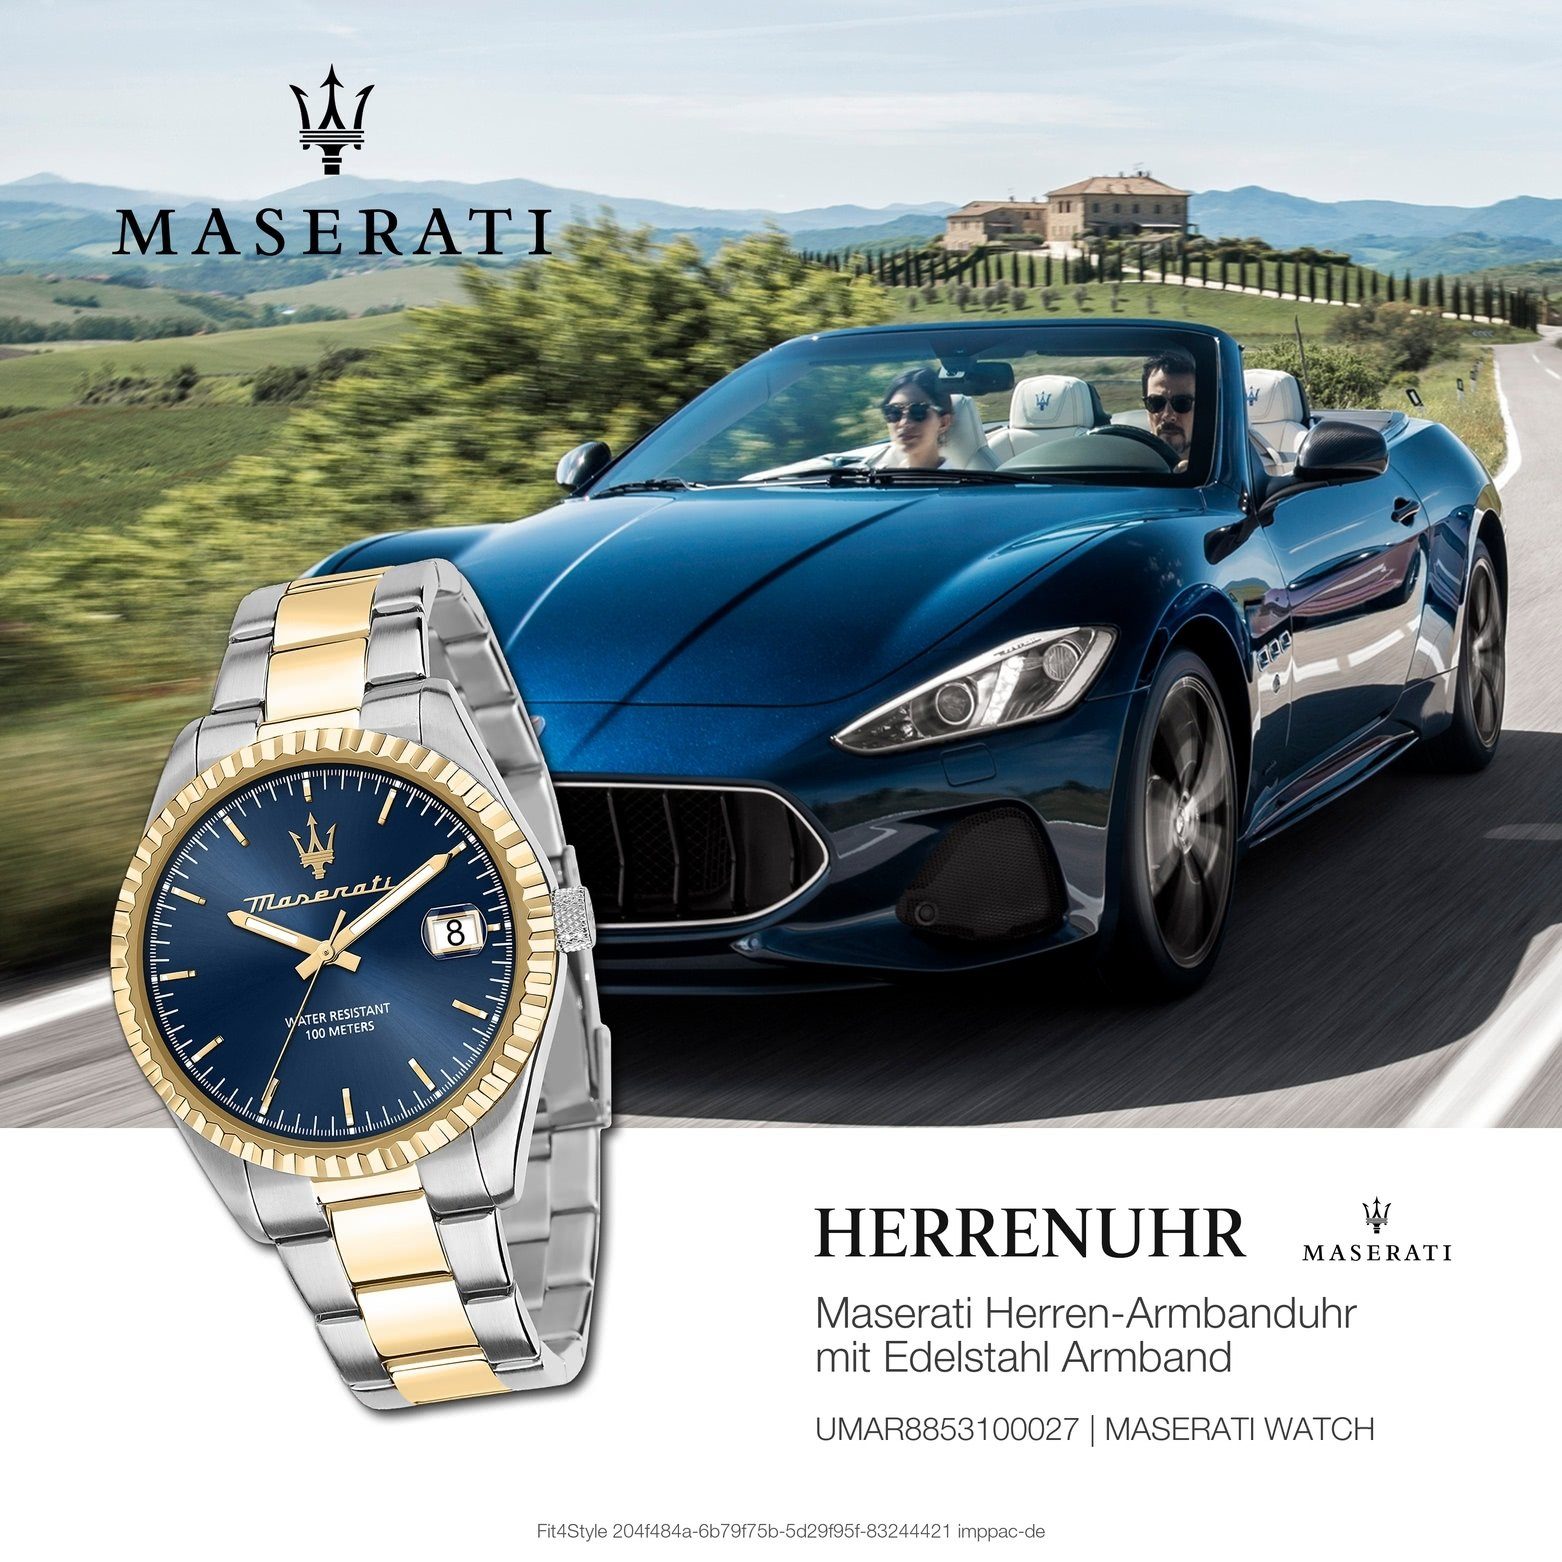 Edelstahlarmband, (ca. Herrenuhr Quarzuhr Italy MASERATI rund, 43mm) COMPETIZIONE, Herrenuhr Made-In bicolor groß Maserati